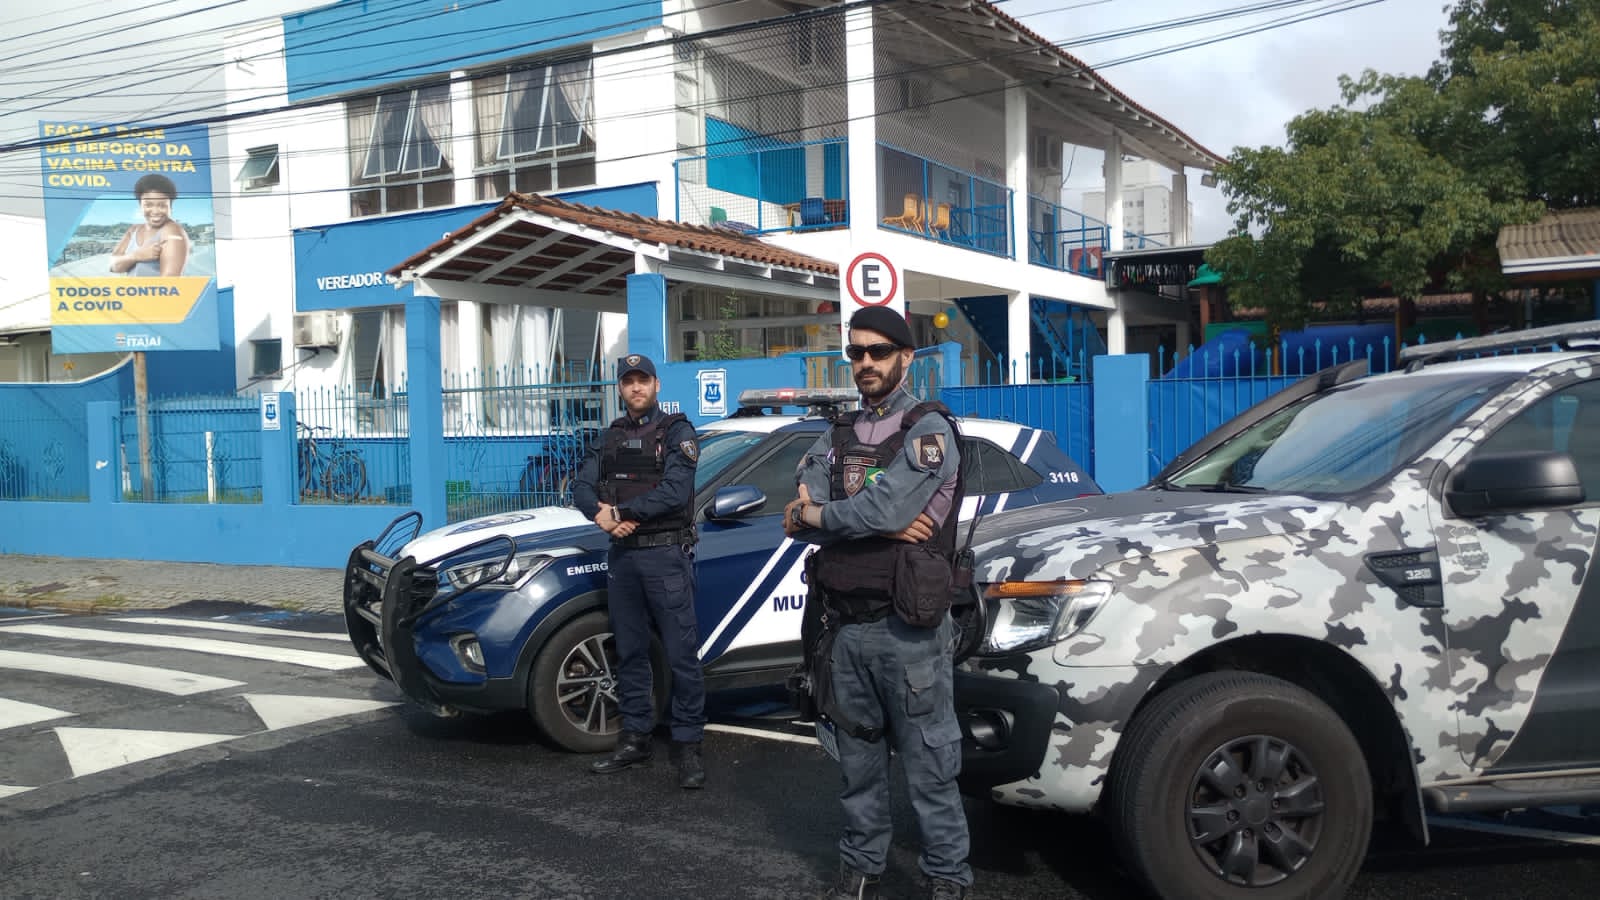 Escolas Protegidas: Itajaí terá segurança armada em todas as escolas da Rede Municipal de Ensino